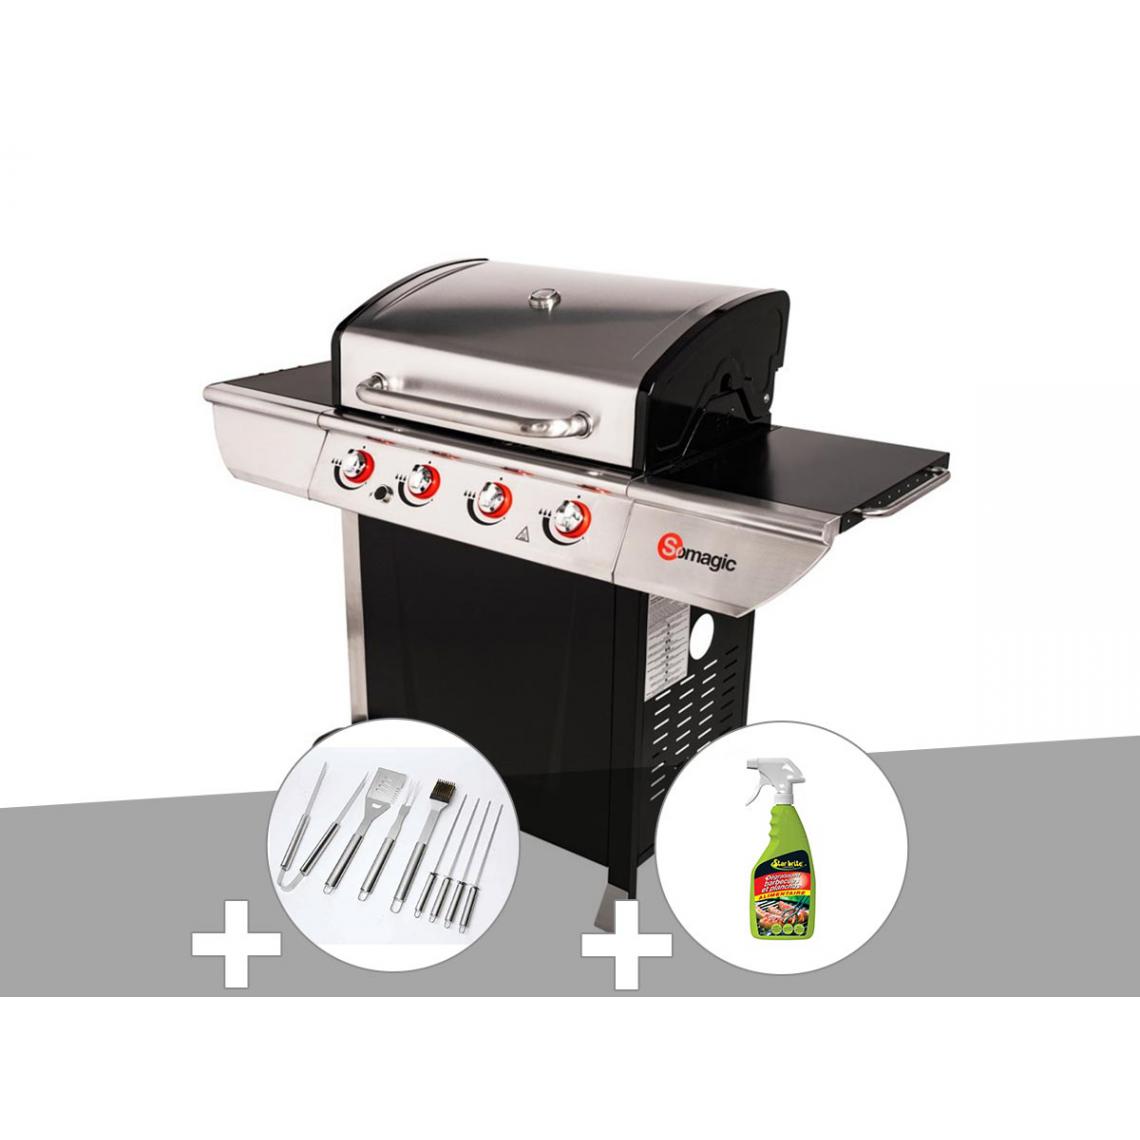 Somagic - Barbecue à gaz avec chariot Manhattan 450GPI + plancha + Malette de 8 accessoires inox + Dégraissant pour barbecue - Barbecues gaz